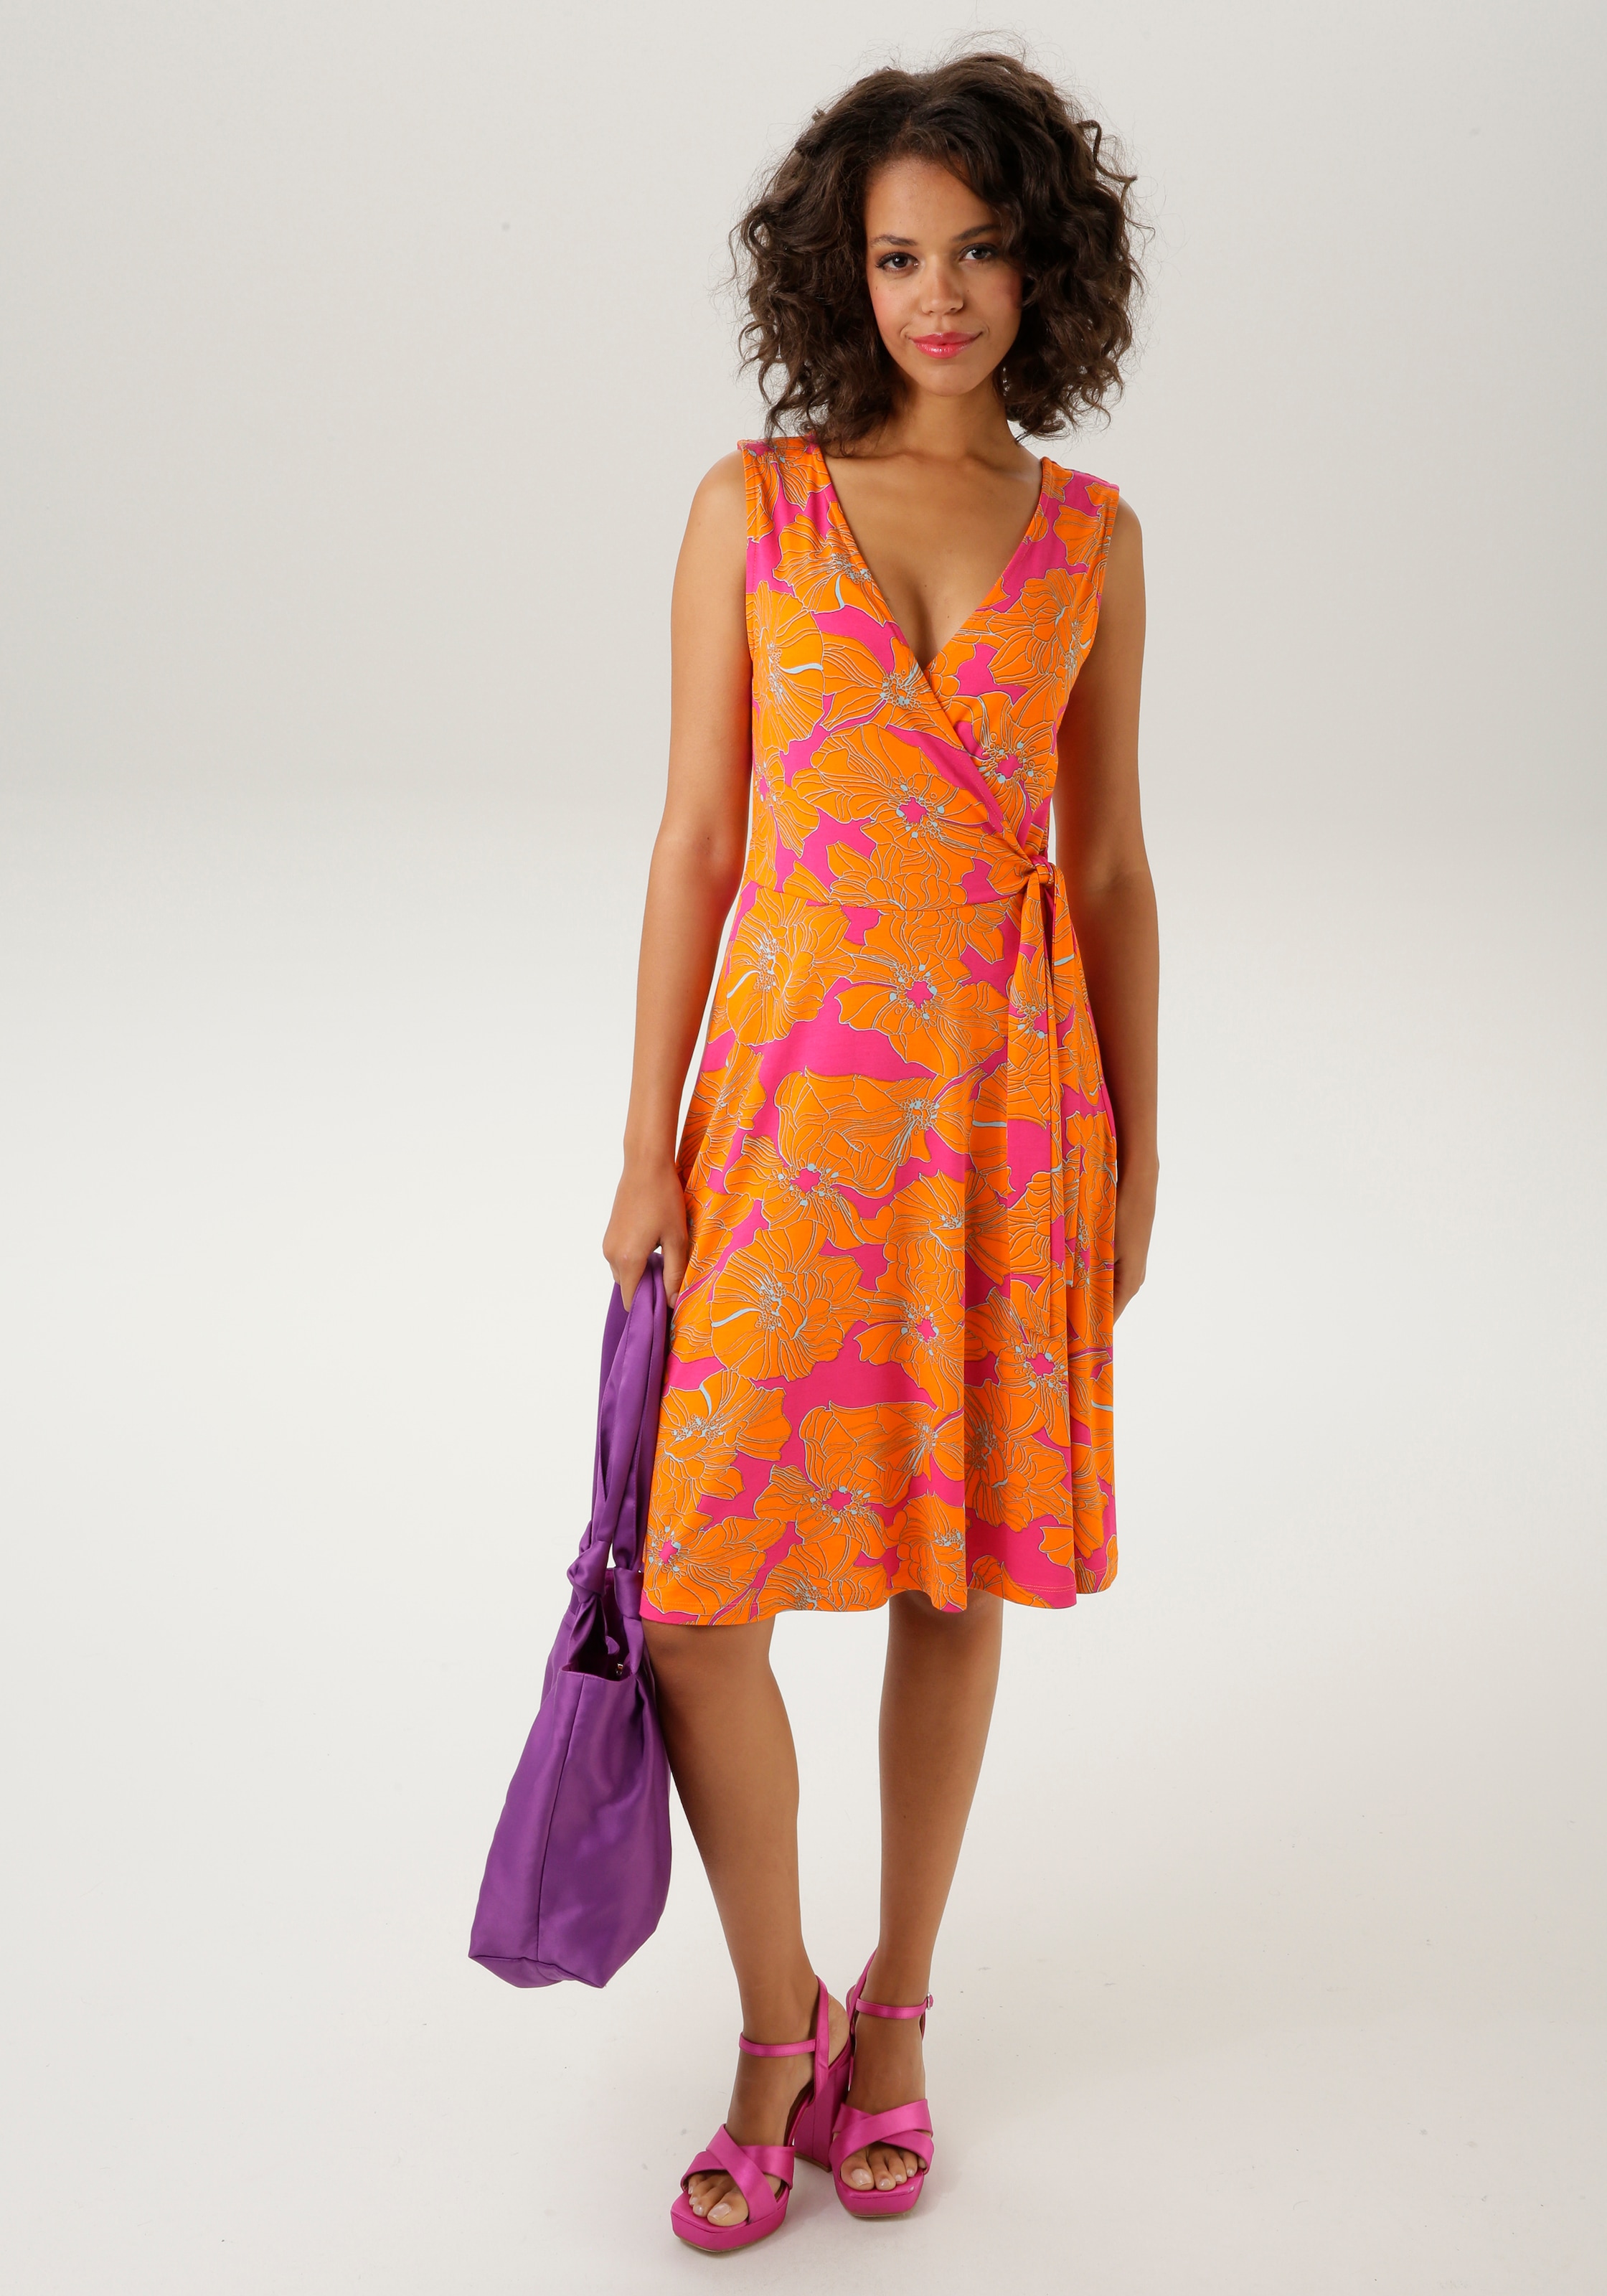 Aniston CASUAL KOLLEKTION NEUE mit - farbintensivem, Sommerkleid, Blumendruck großflächigem kaufen